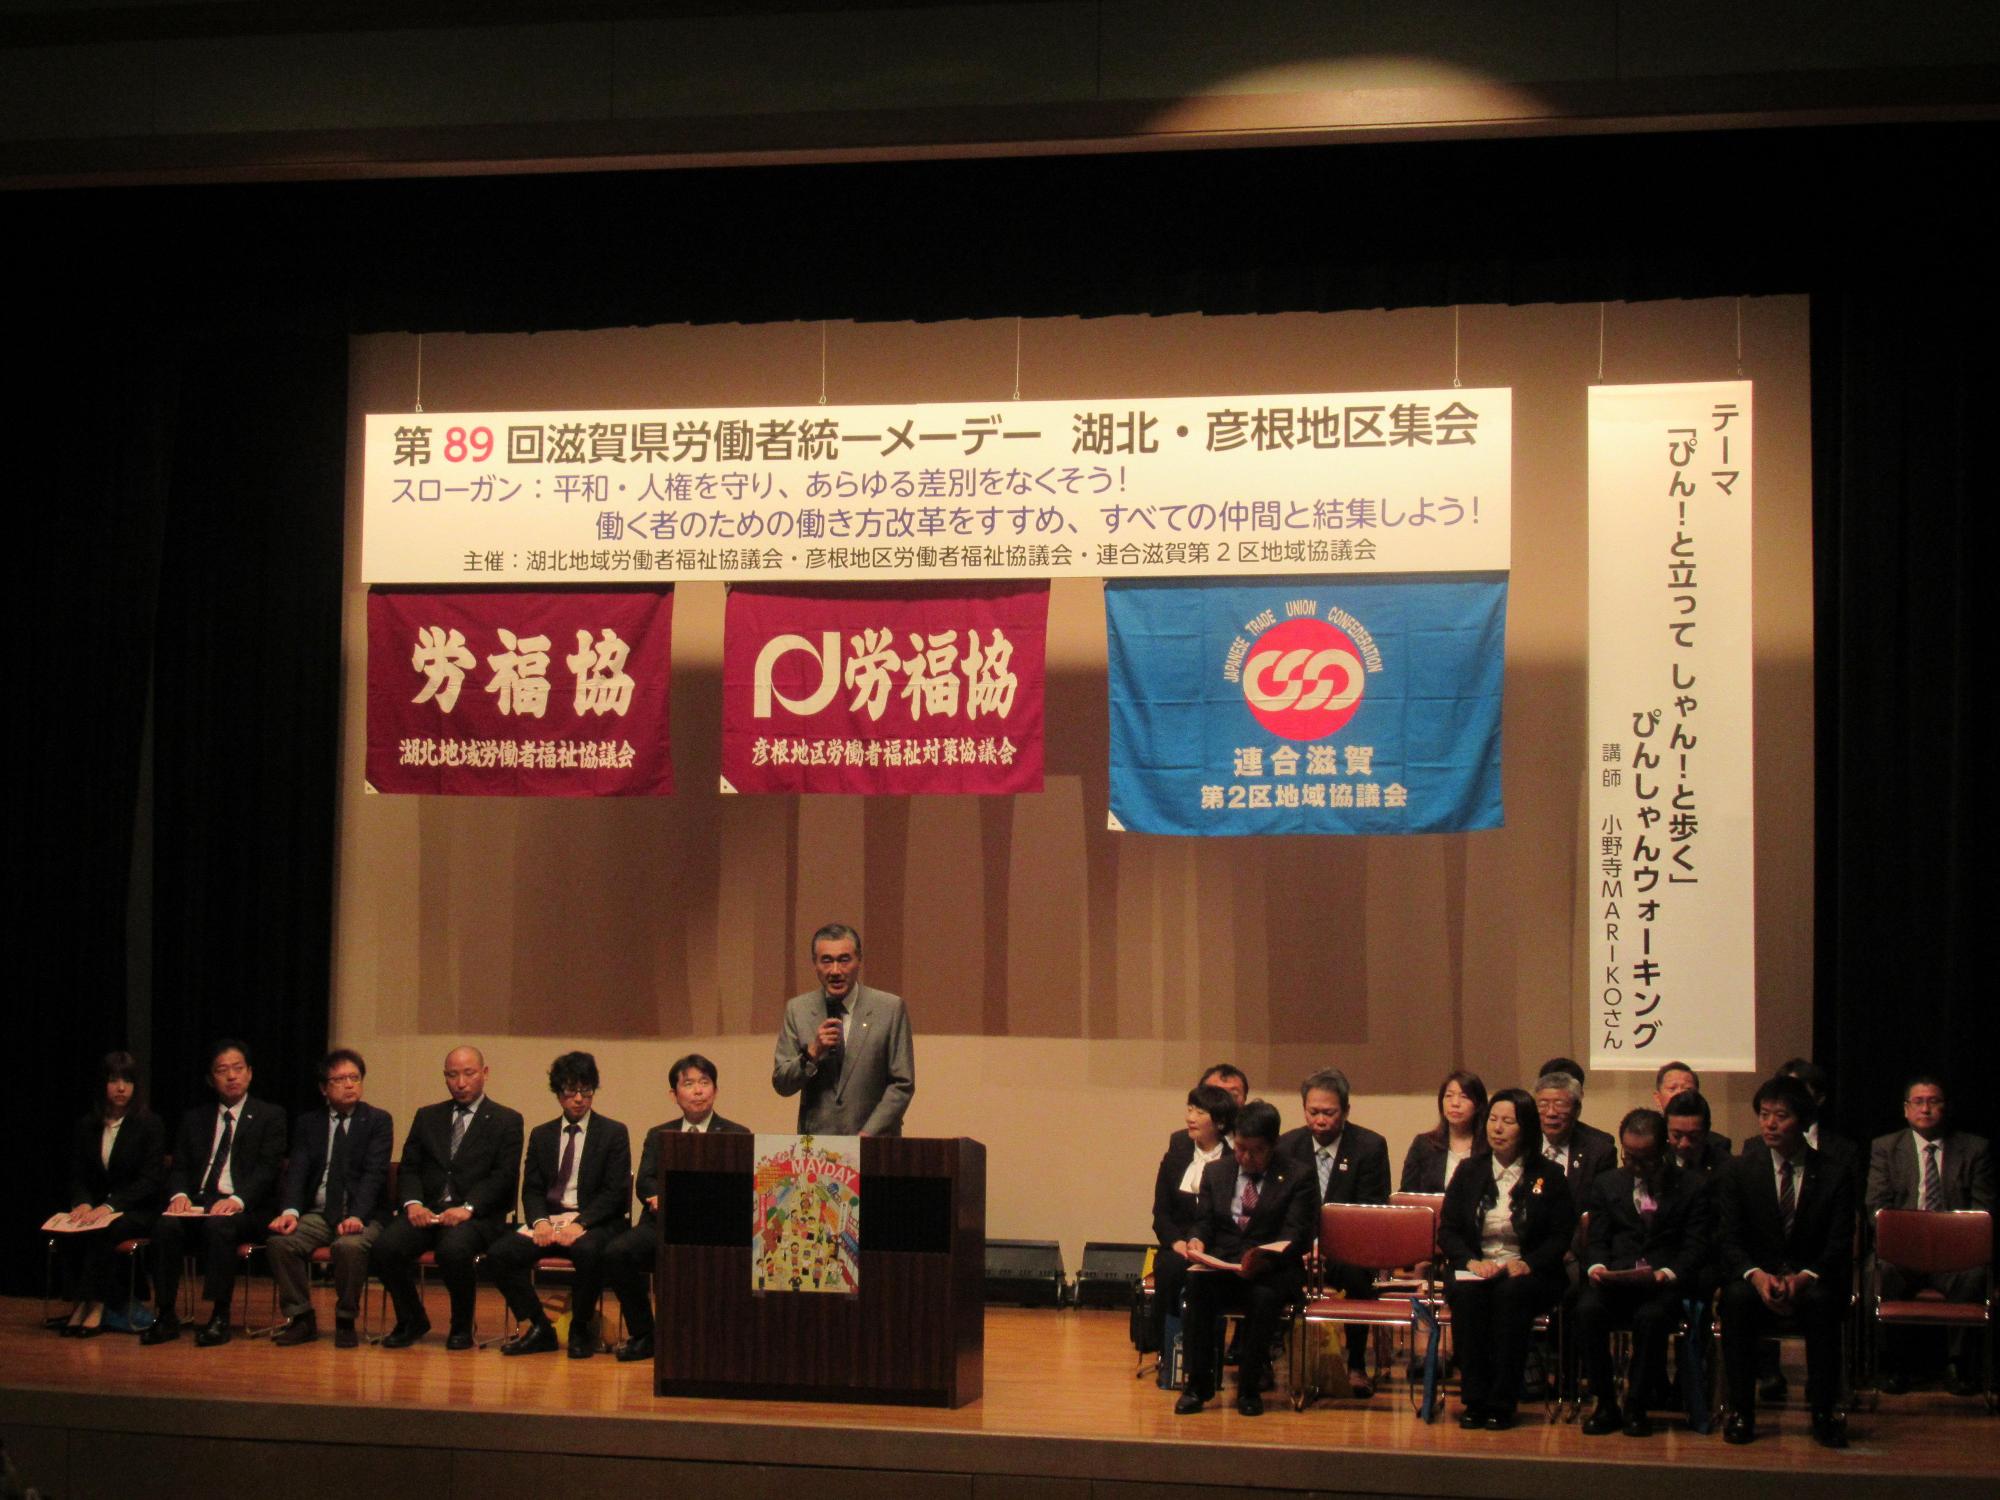 第89回滋賀県労働者統一メーデー湖北・彦根地区集会であいさつをしている市長の写真